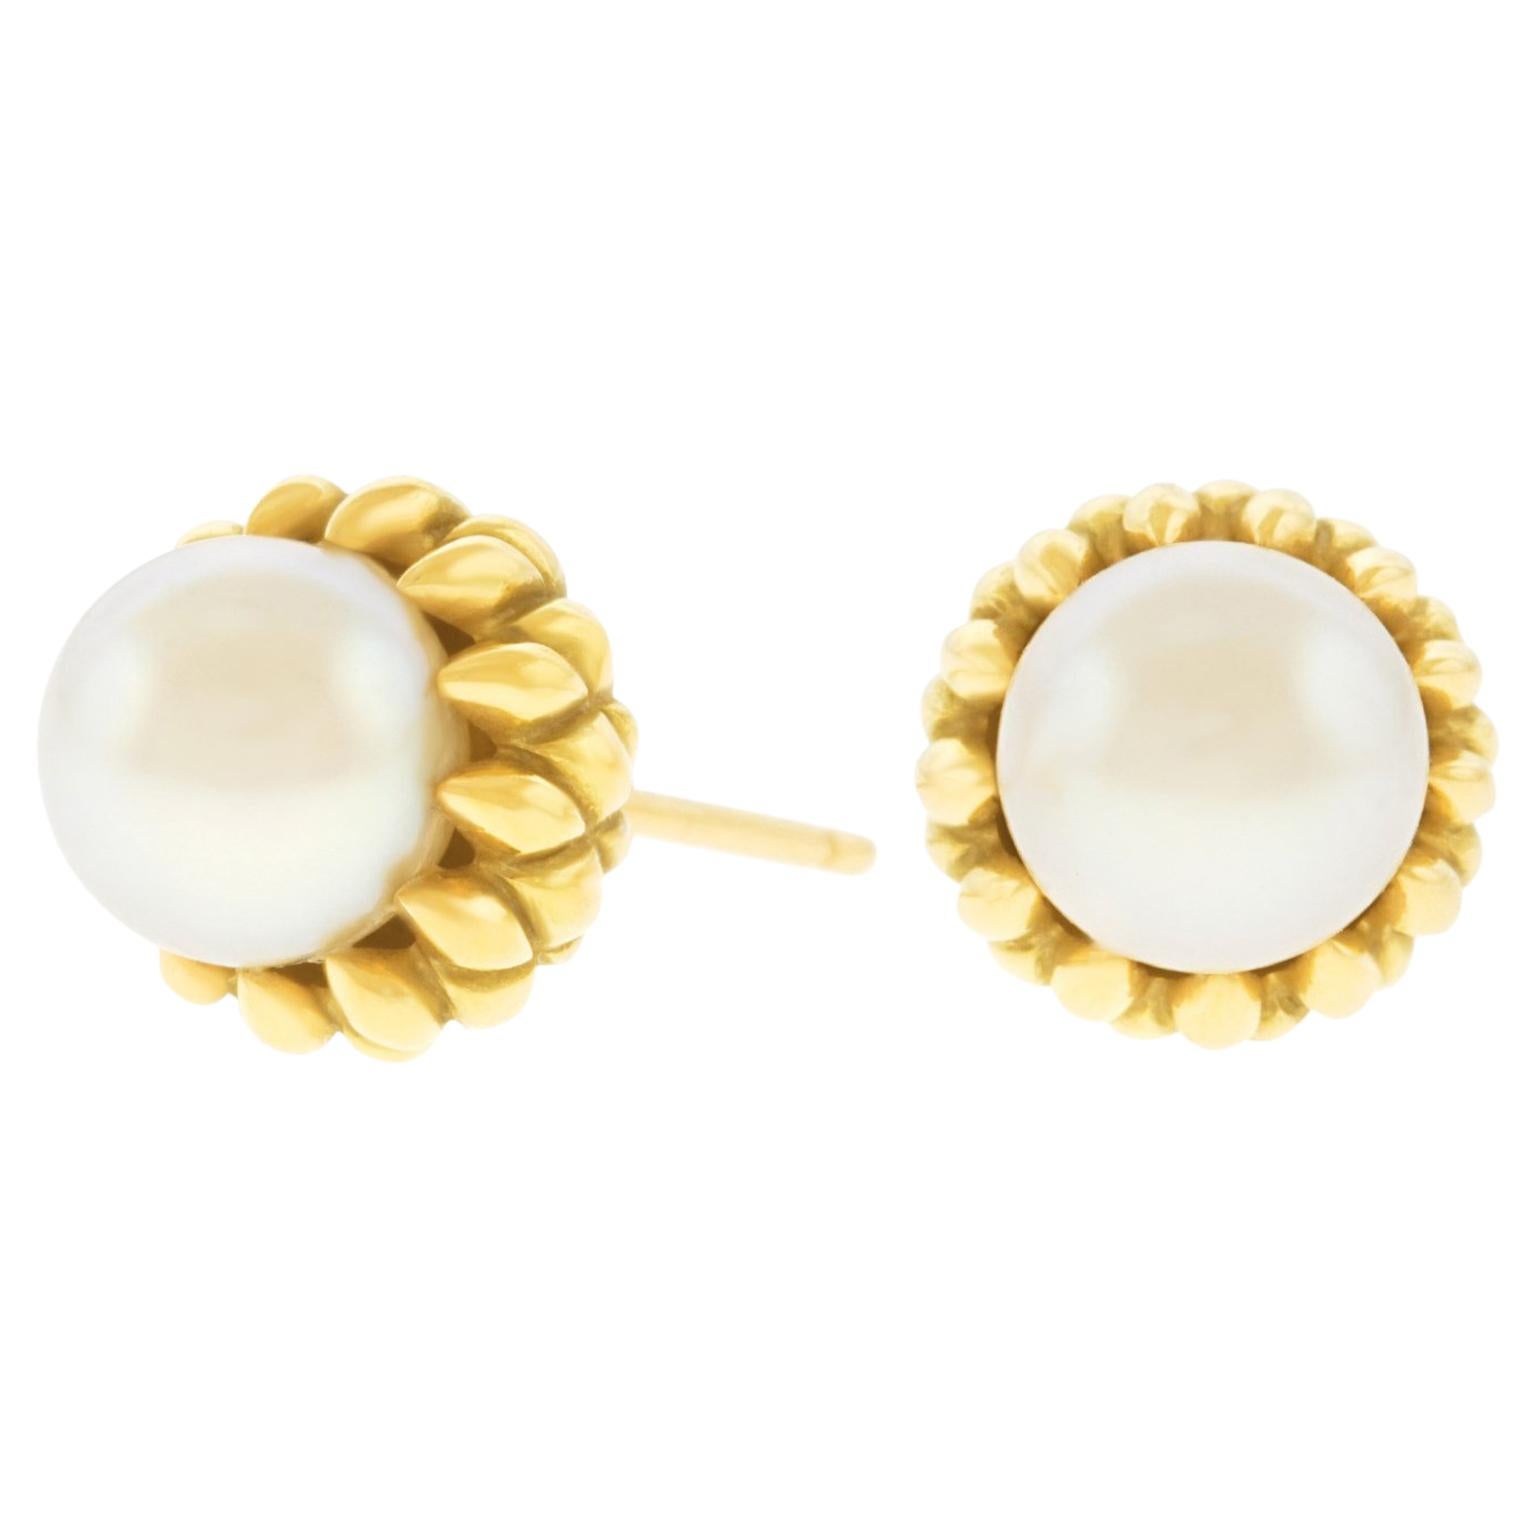 Co. Gold Acorn Earrings 